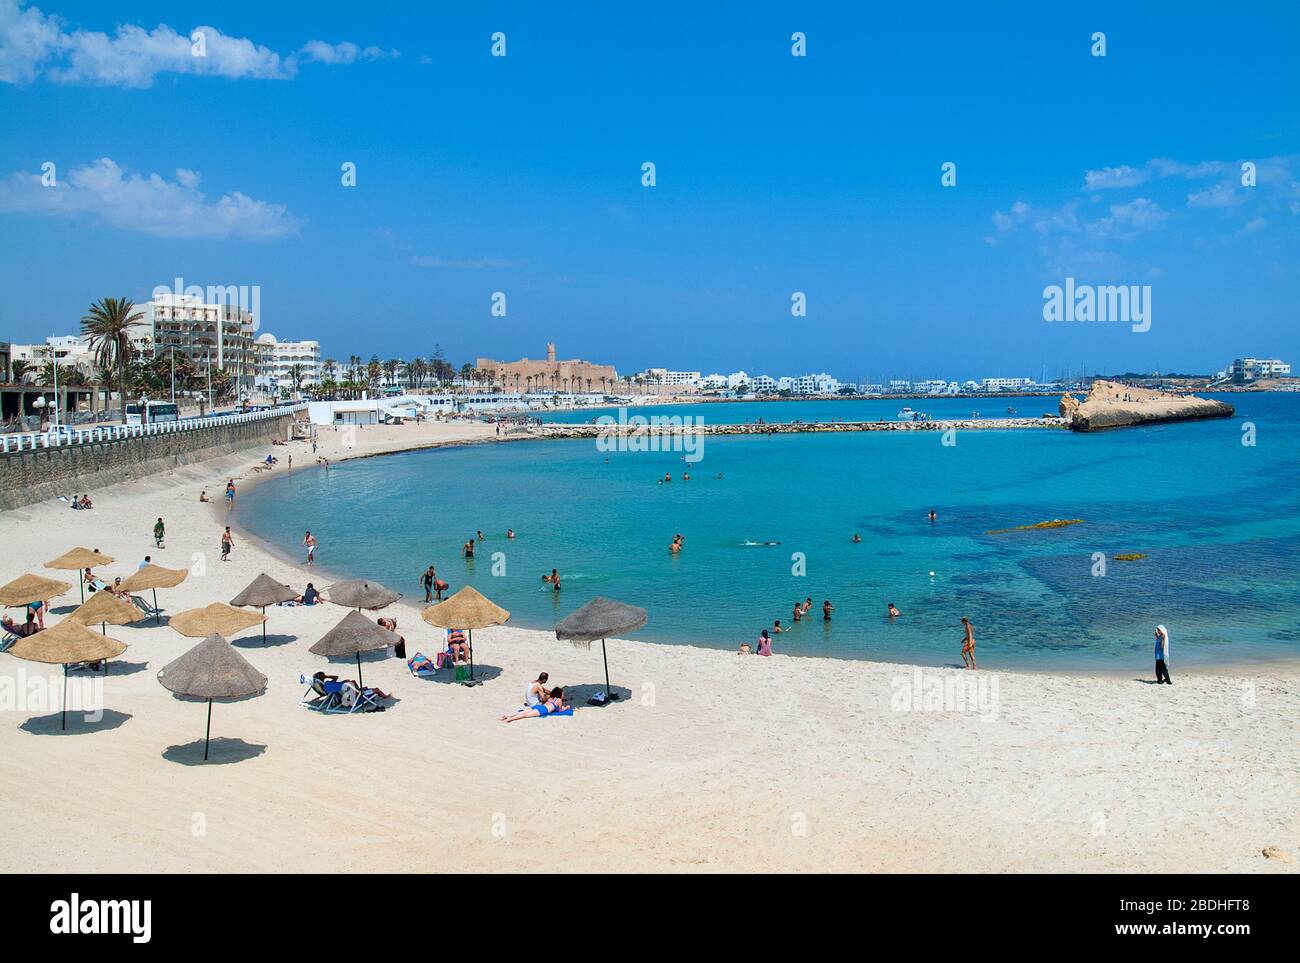 Plage de Monastir avec Ribat donnant sur la mer, Tunisie Banque D'Images